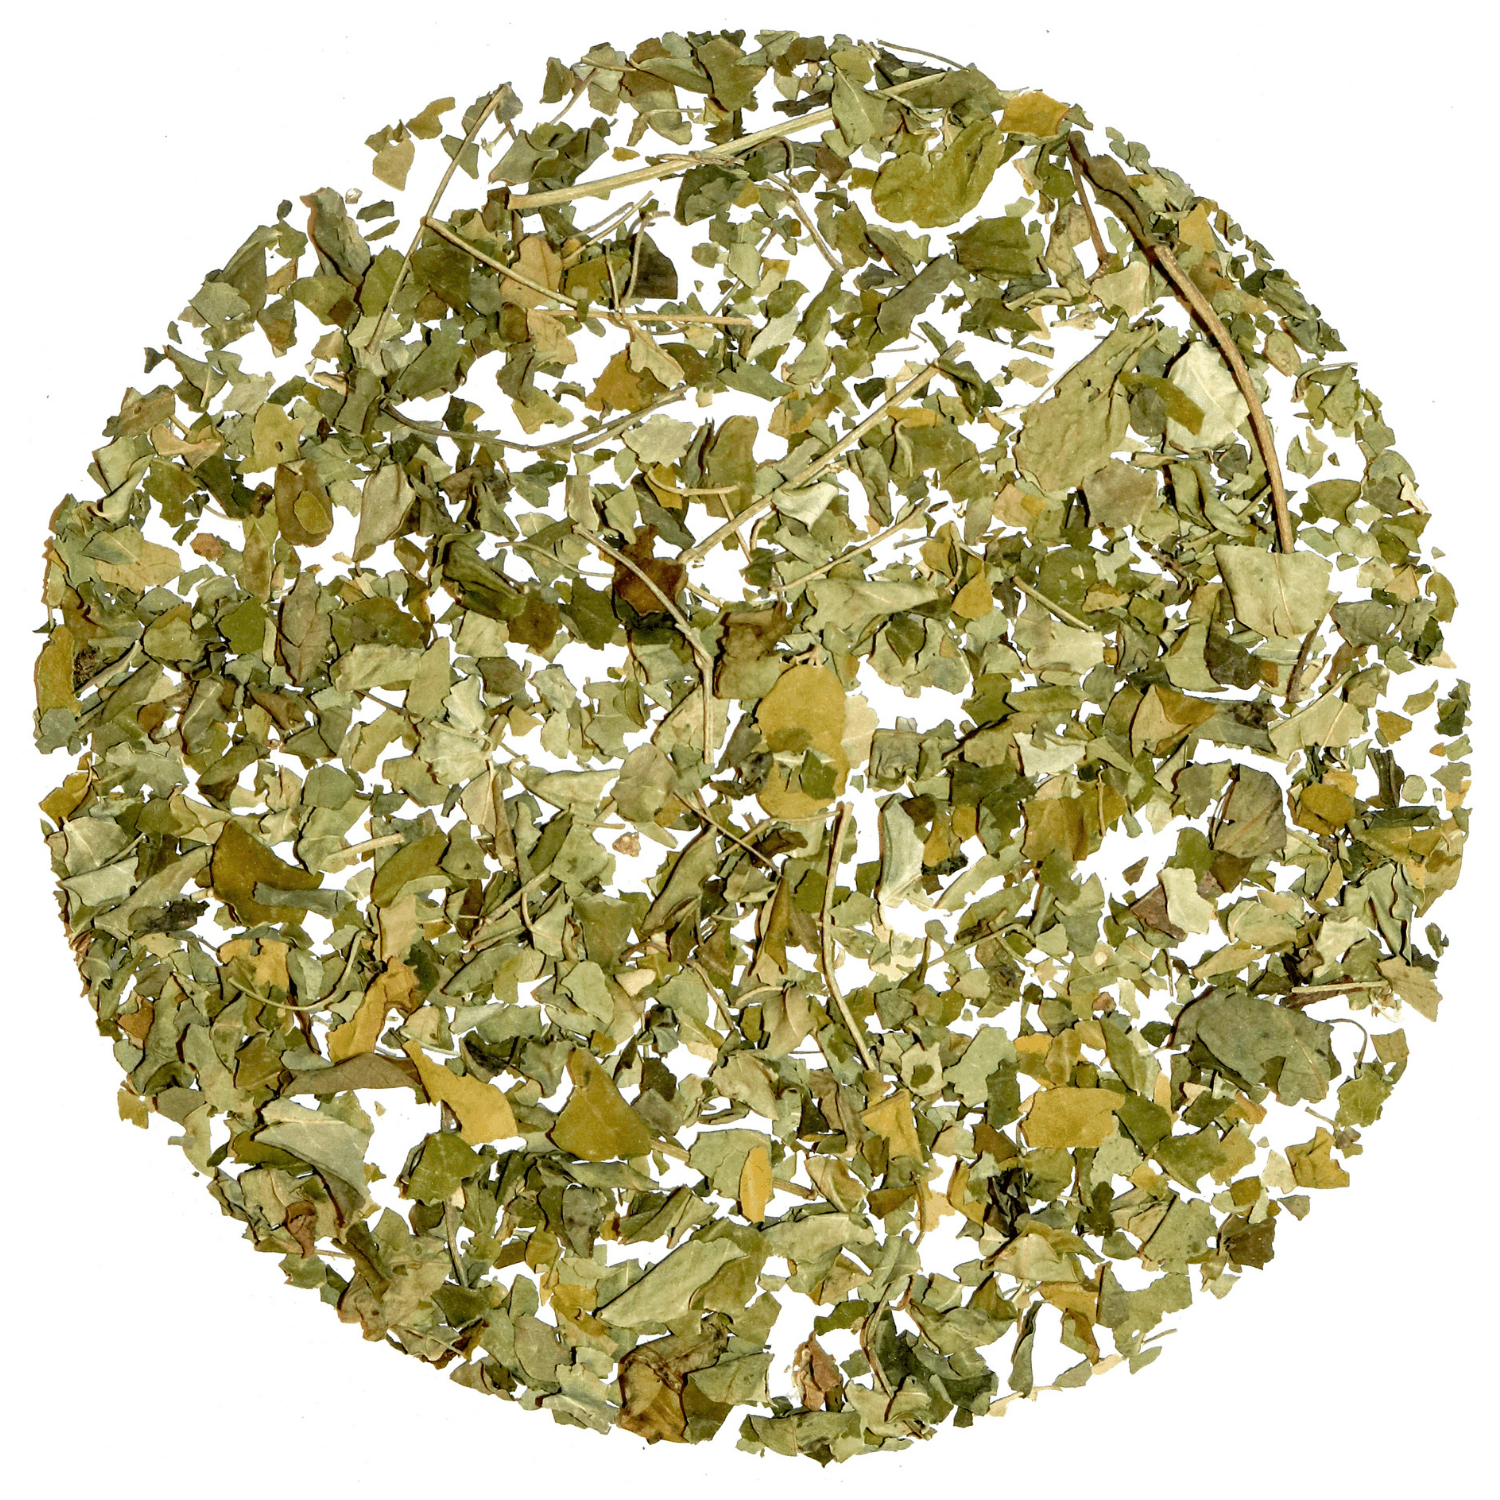 Pure Moringa Tea - Tearaja